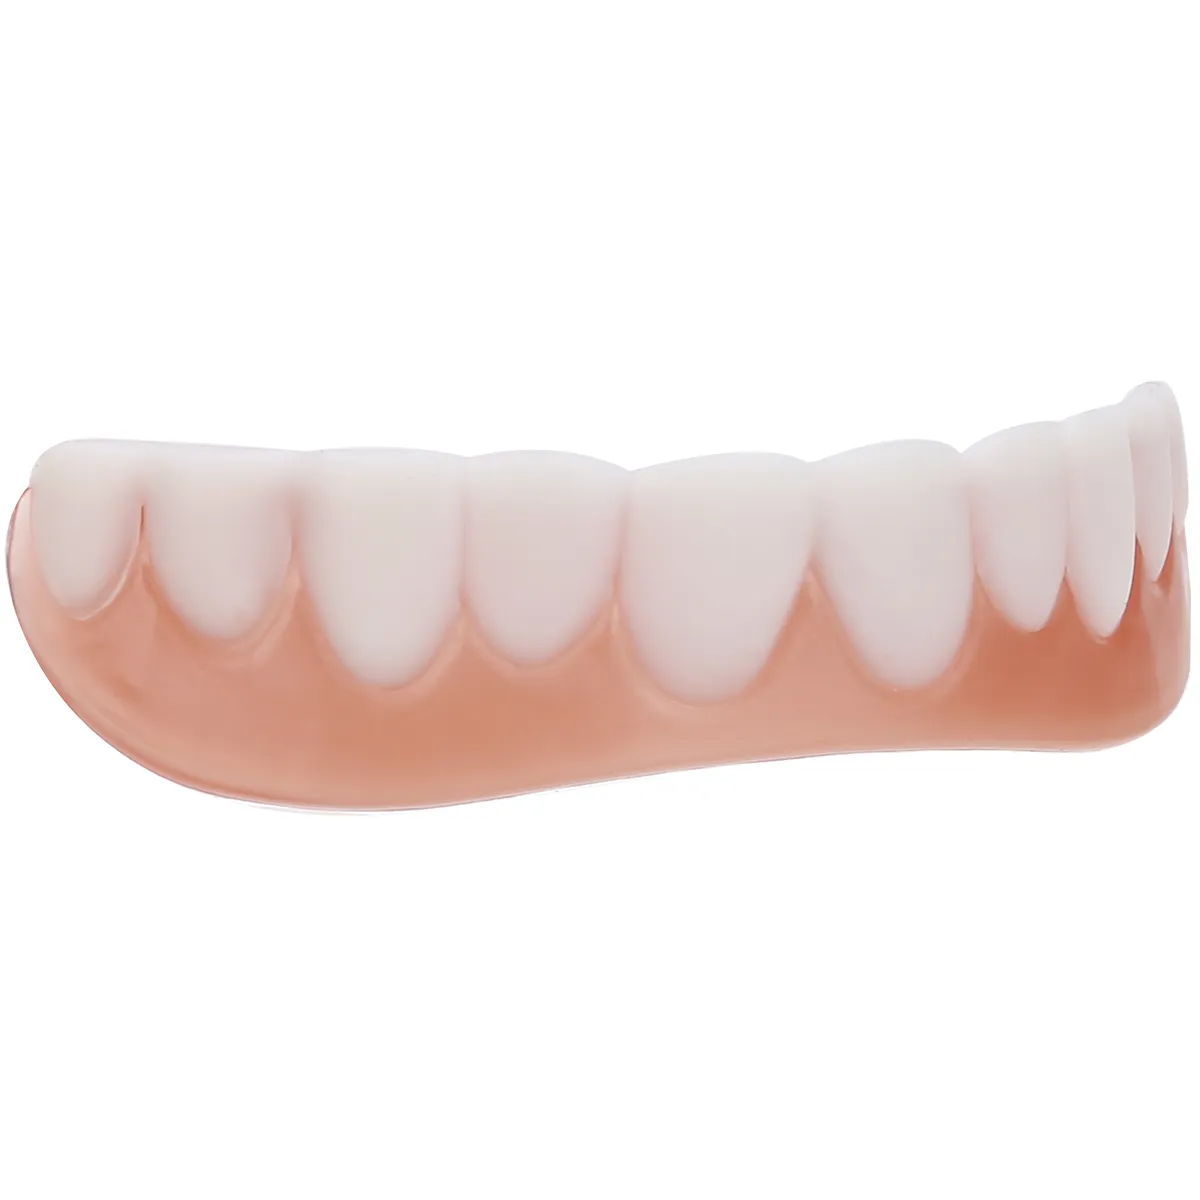 NOUVEAU PERFORME CONTRE-TERME PLAVEER Les dents cosmétiques couvrent les accolades de blanchiment de dents en silicone1431856